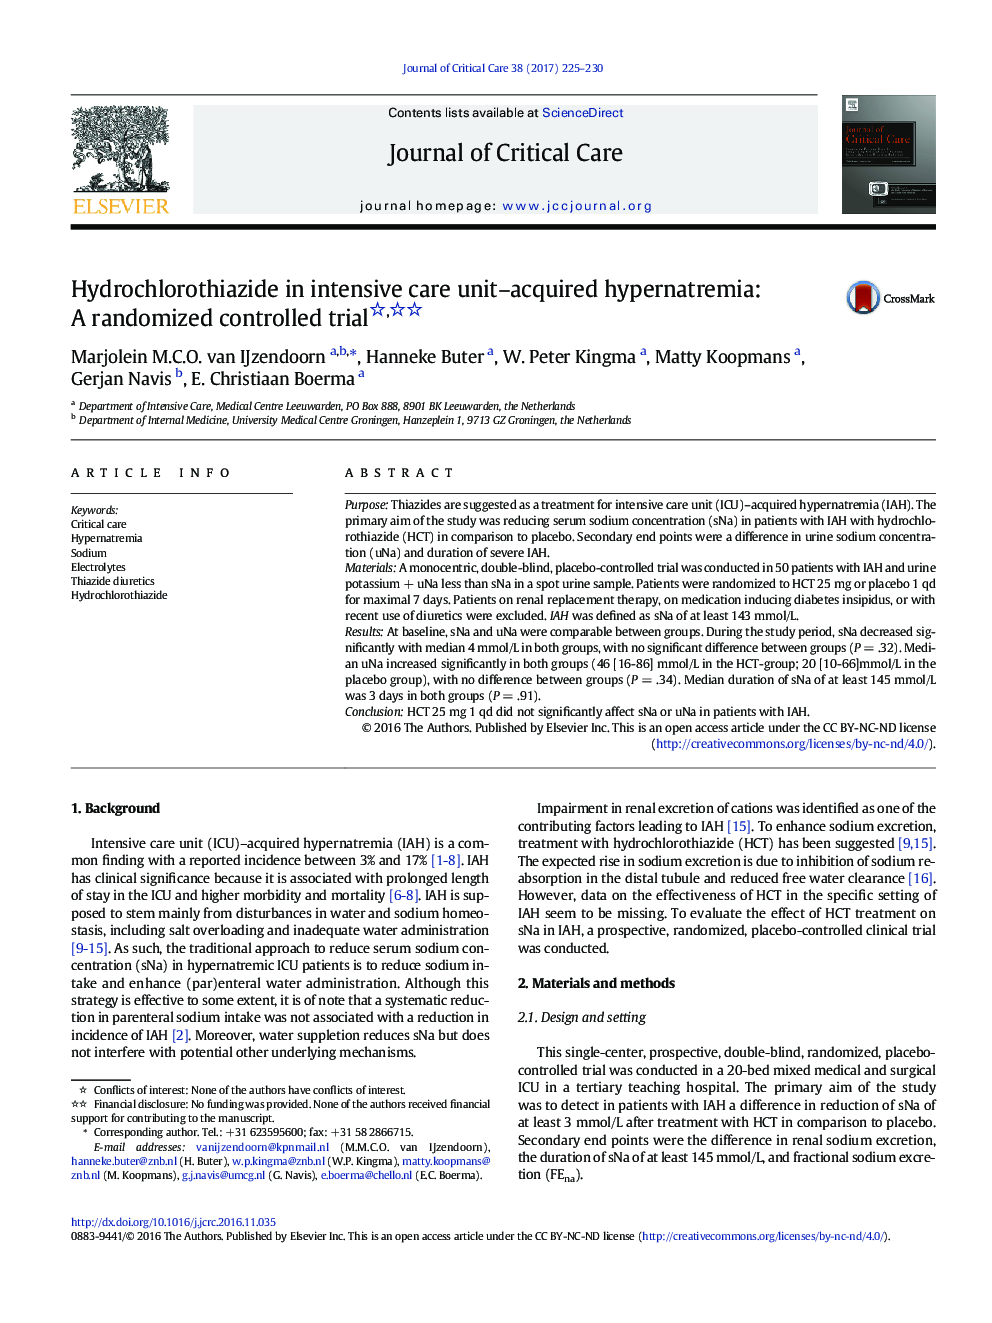 هیدروکلروتیازید در هیپرناترمی اکتسابی از بخش مراقبت های ویژه: مطالعه کنترل شده تصادفی